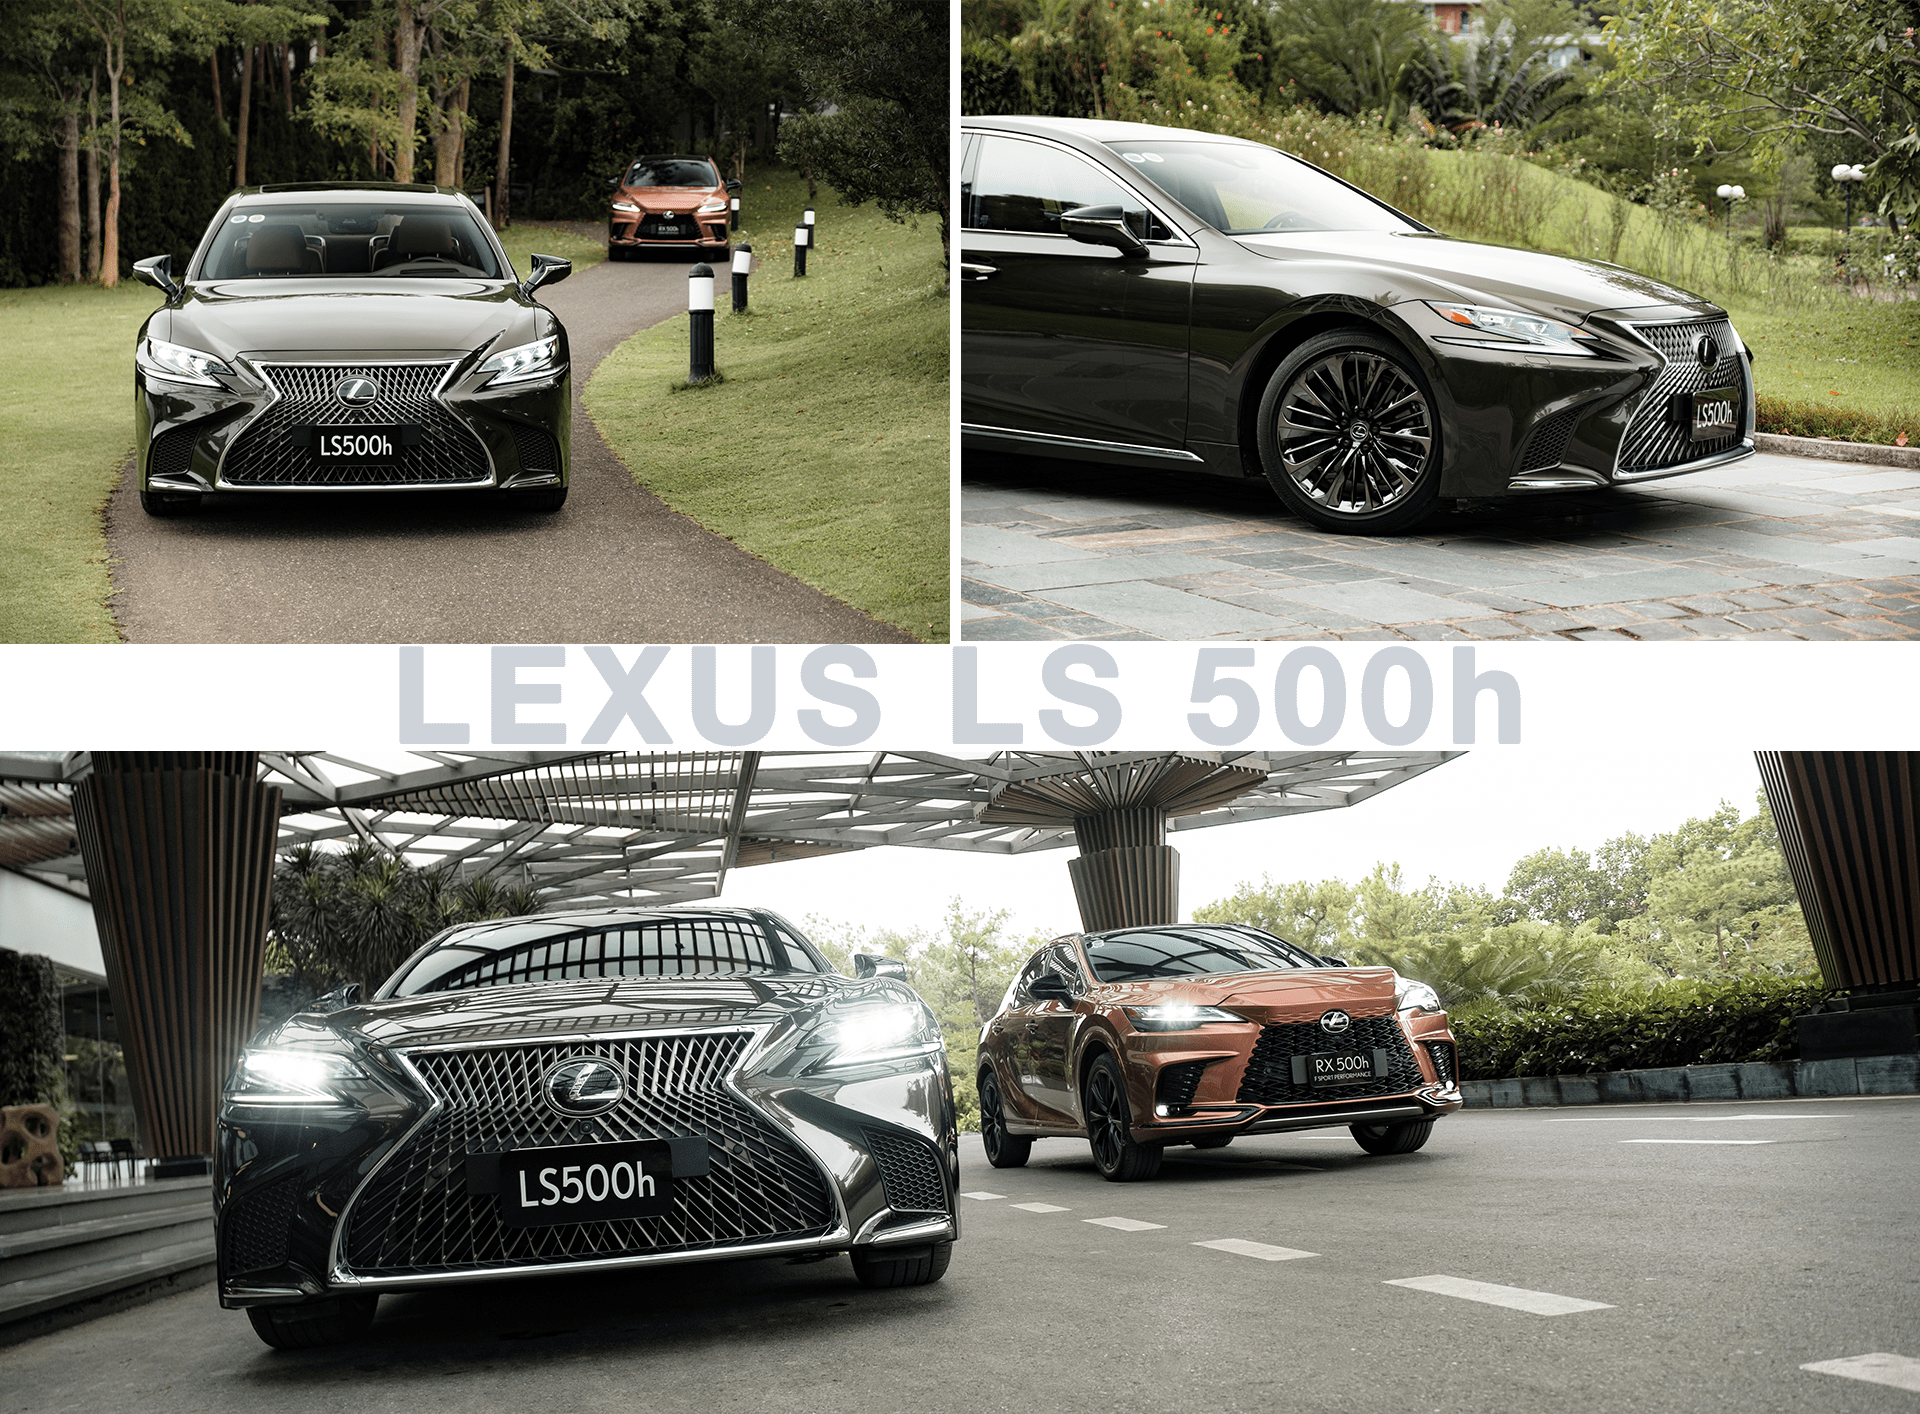 Liệu dùng công nghệ Hybrid có khiến xe Lexus thêm tốn kém?